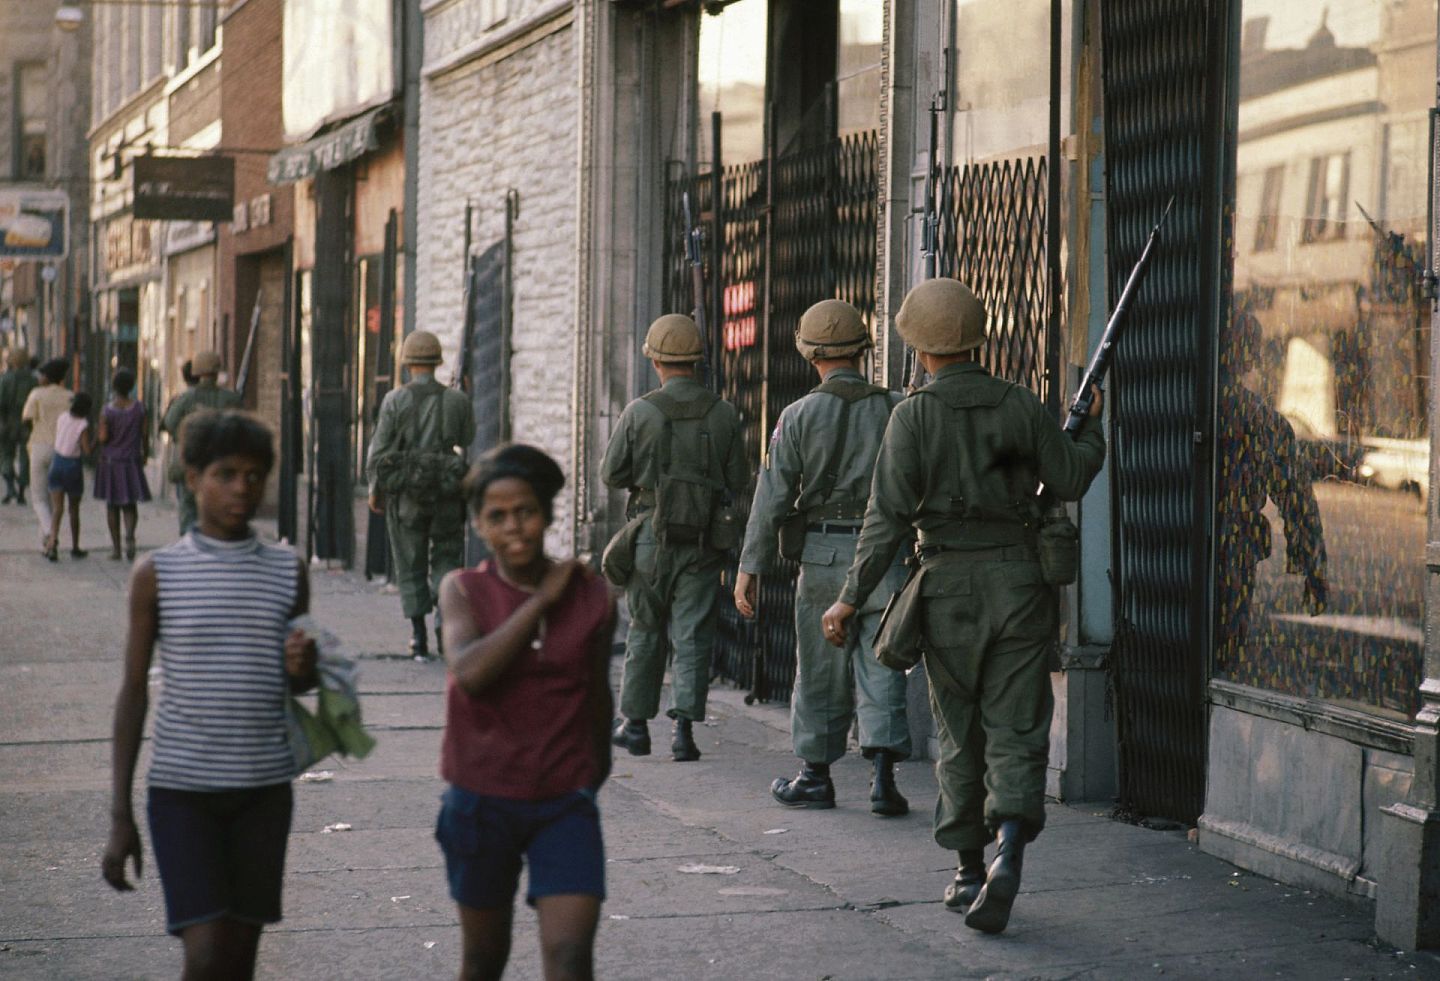 国民警卫队历史上曾多次被派遣协助警察执法。图为1968年，民权领袖马丁路德金被暗杀后引发骚乱及暴力事件，数名国民警卫队成员在芝加哥市区巡逻。（Getty Images）